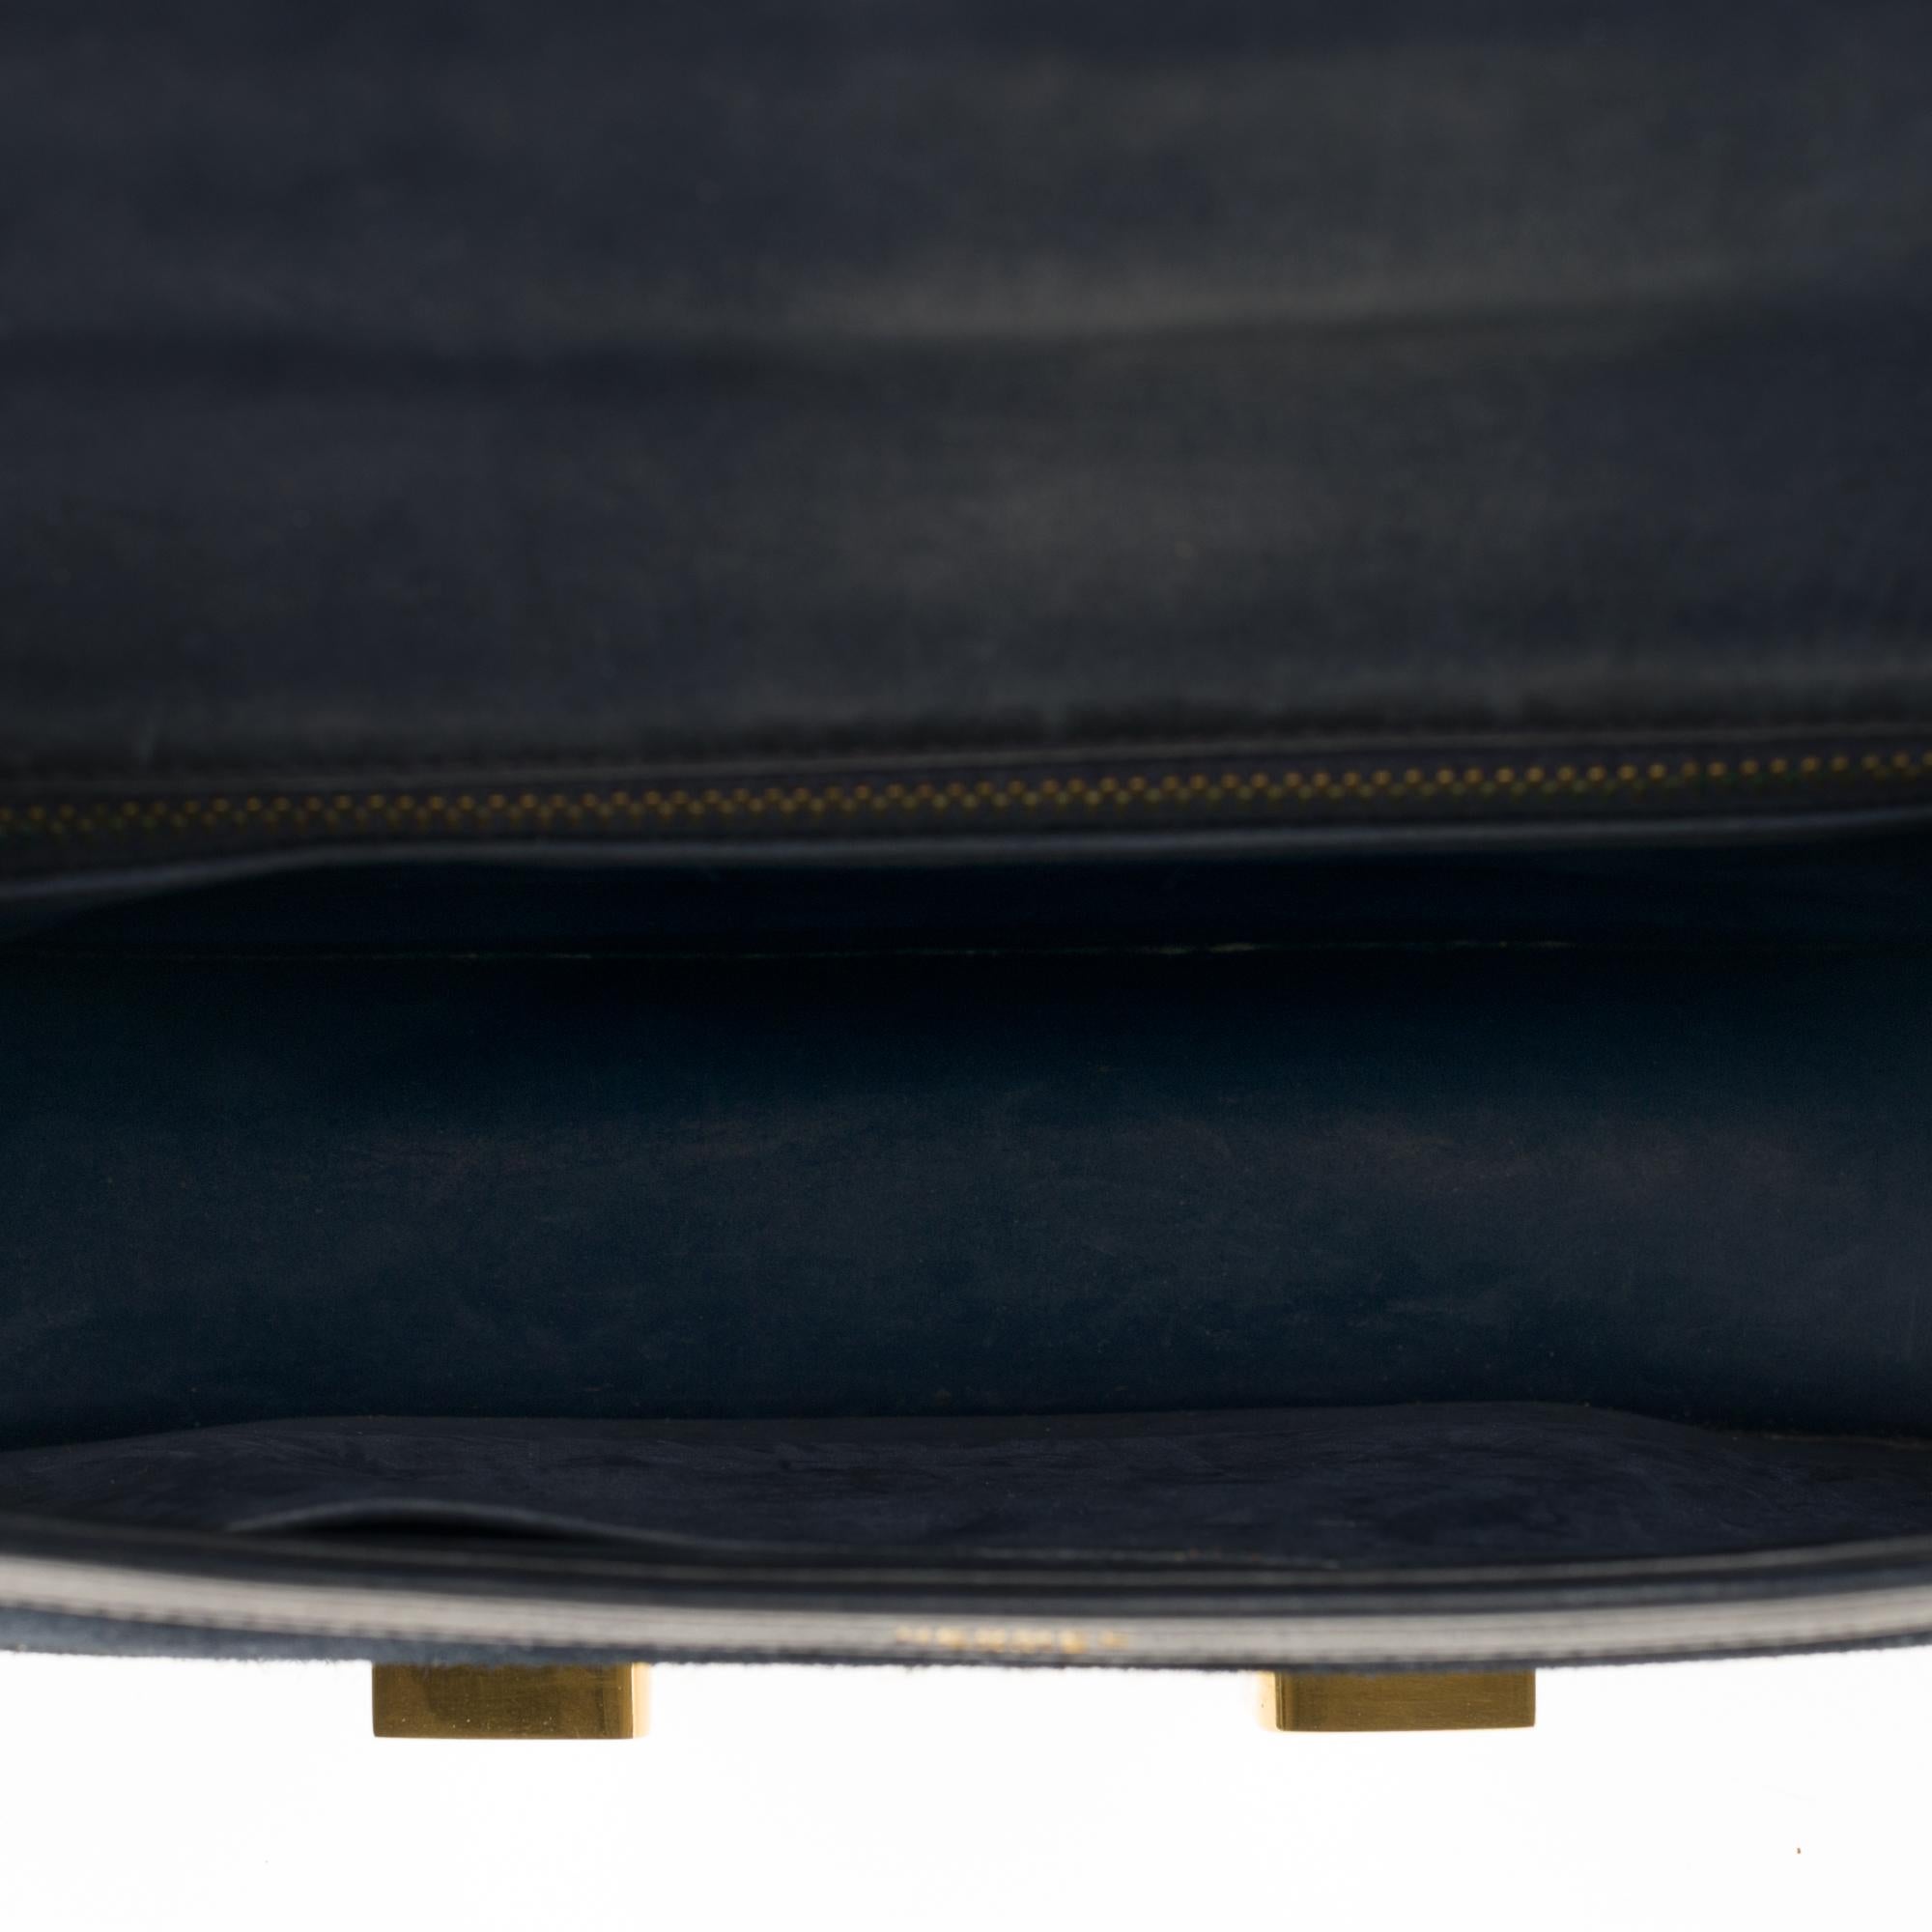 VERY RARE Hermes Constance  DOBLIS shoulder bag in Navy blue Gold hardware! 2